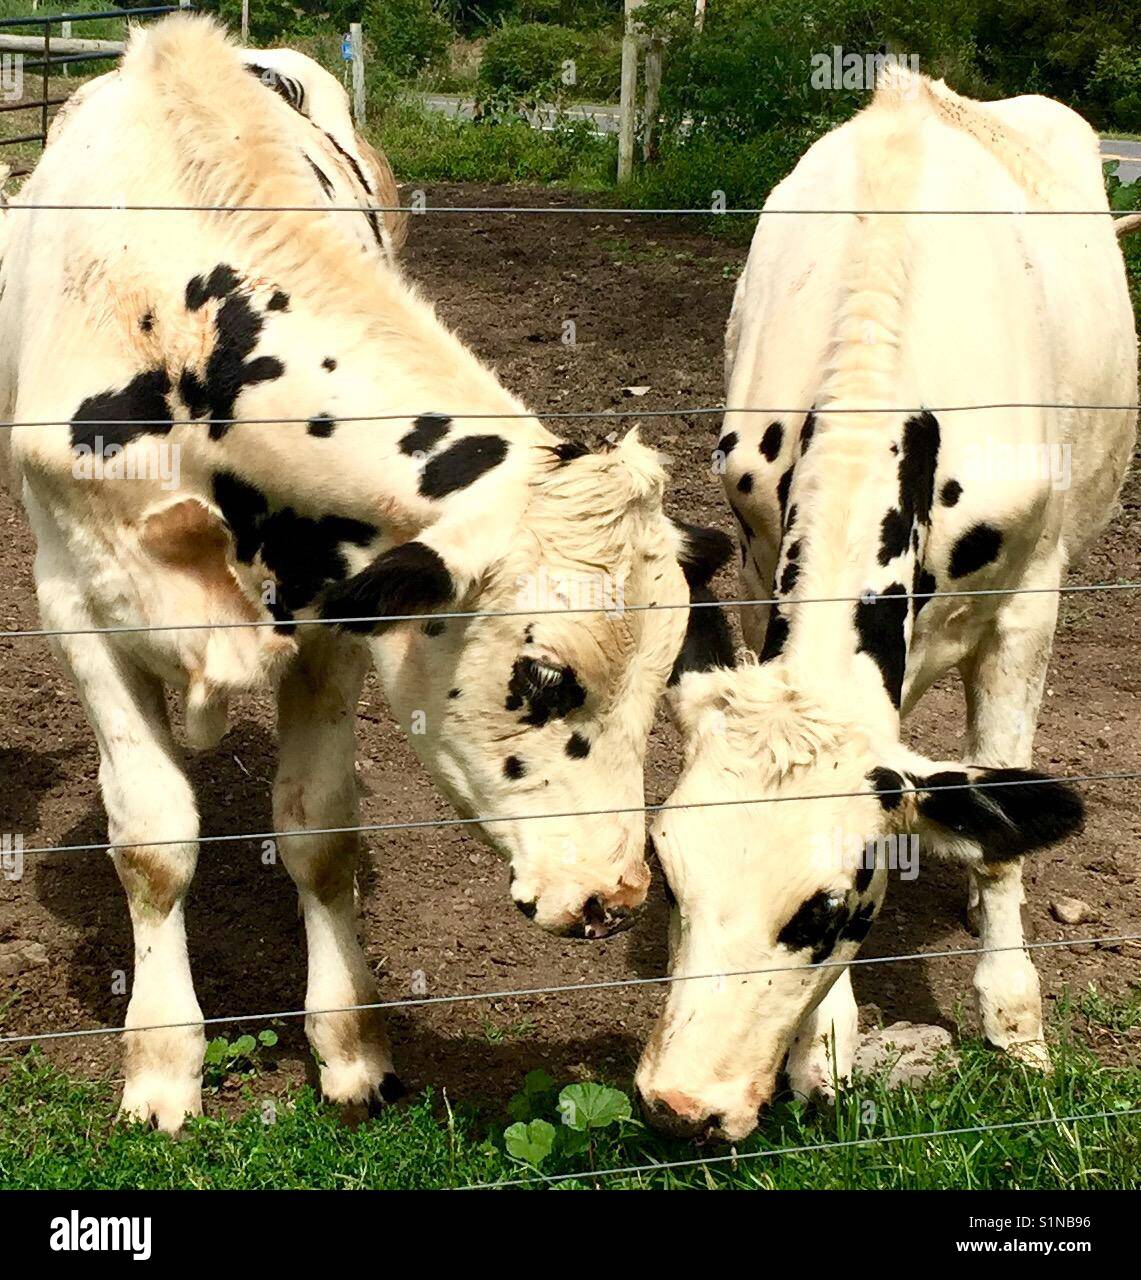 2 vaches blanches avec des taches noires, ensemble, "Qu'avez-vous trouvé l'une vache semble dire à l'autre vache folle" Banque D'Images